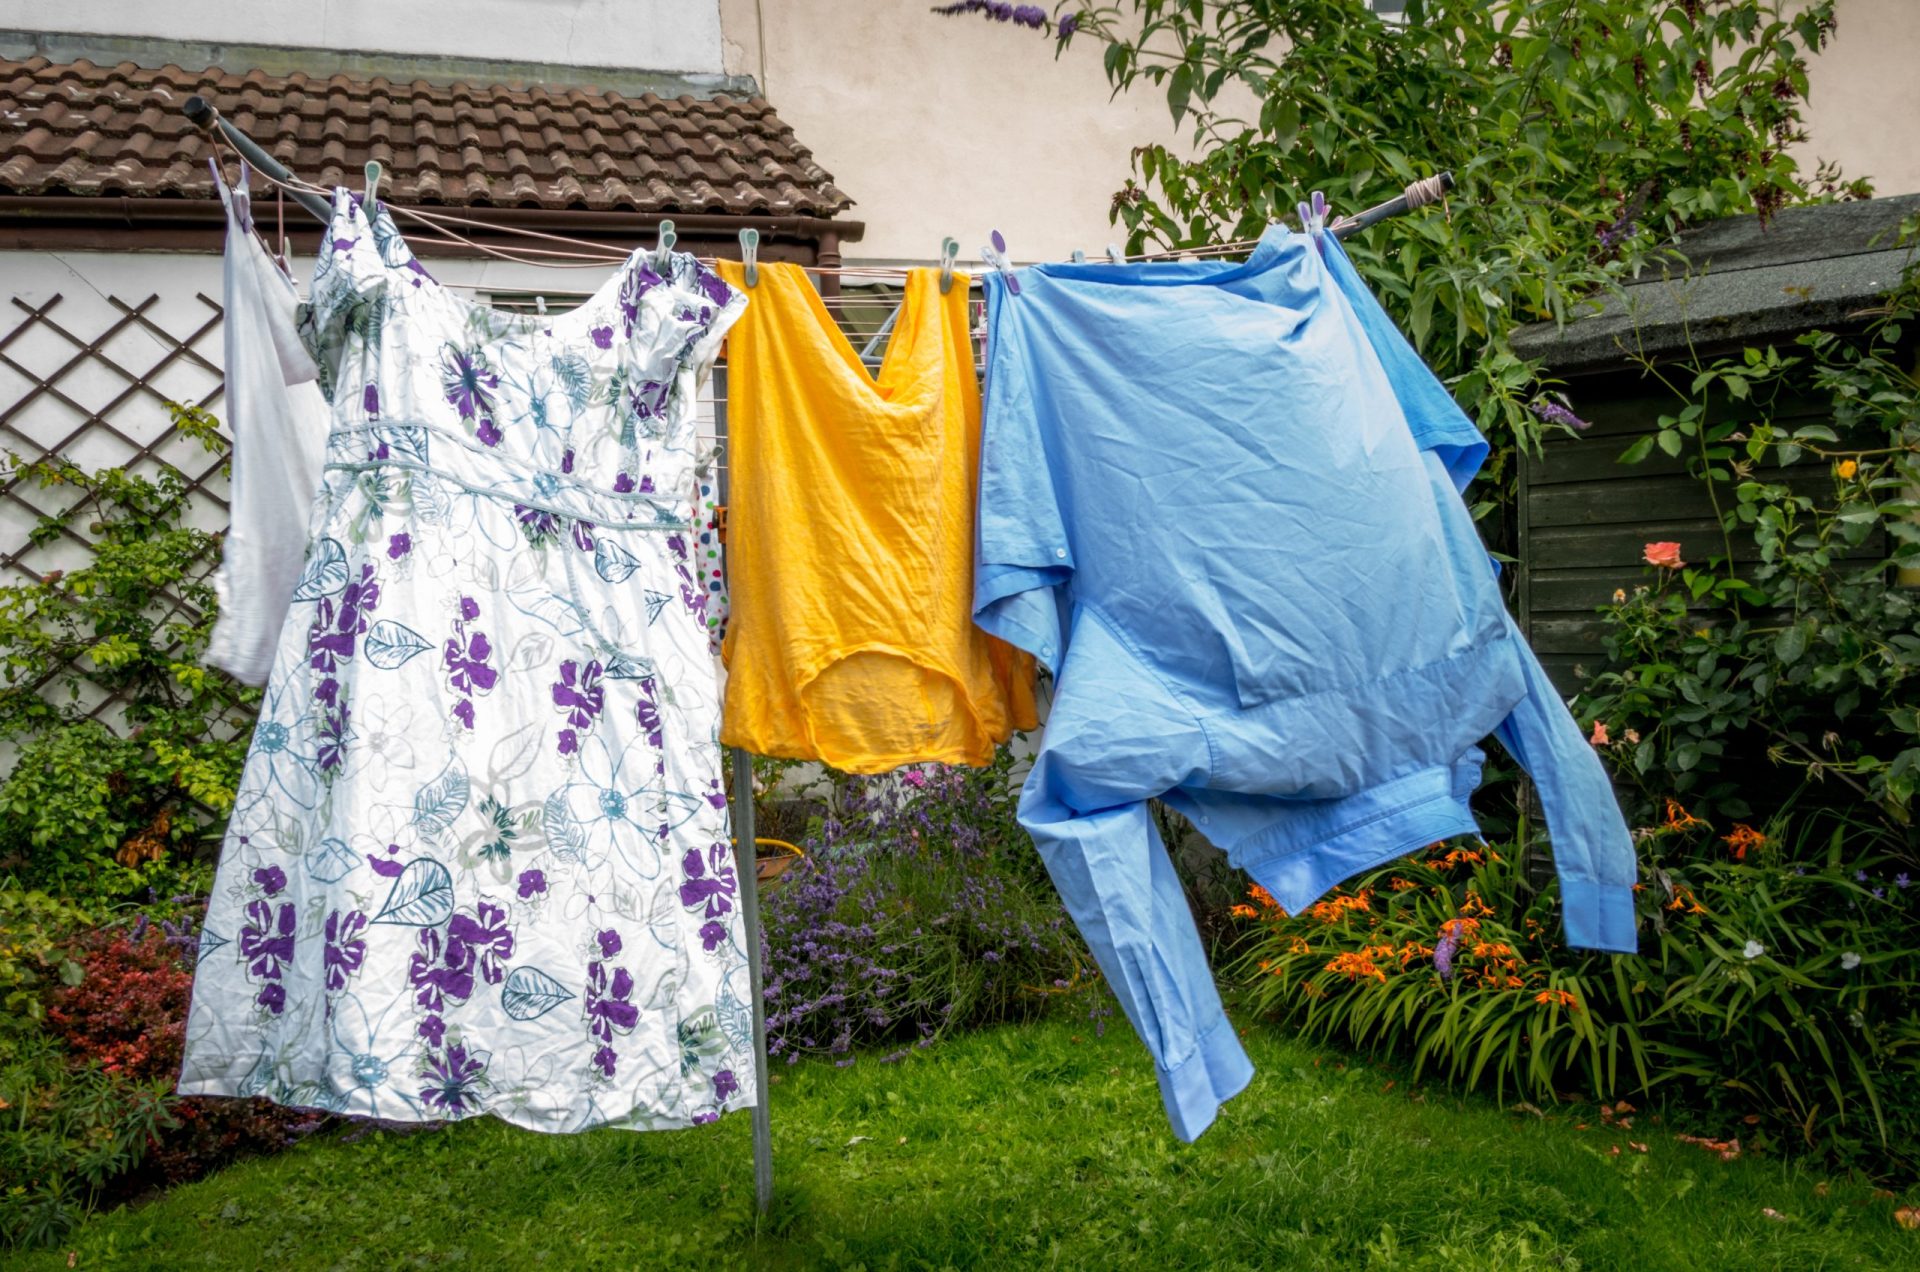 Como lavar e desinfetar a roupa? Eis os conselhos da DGS